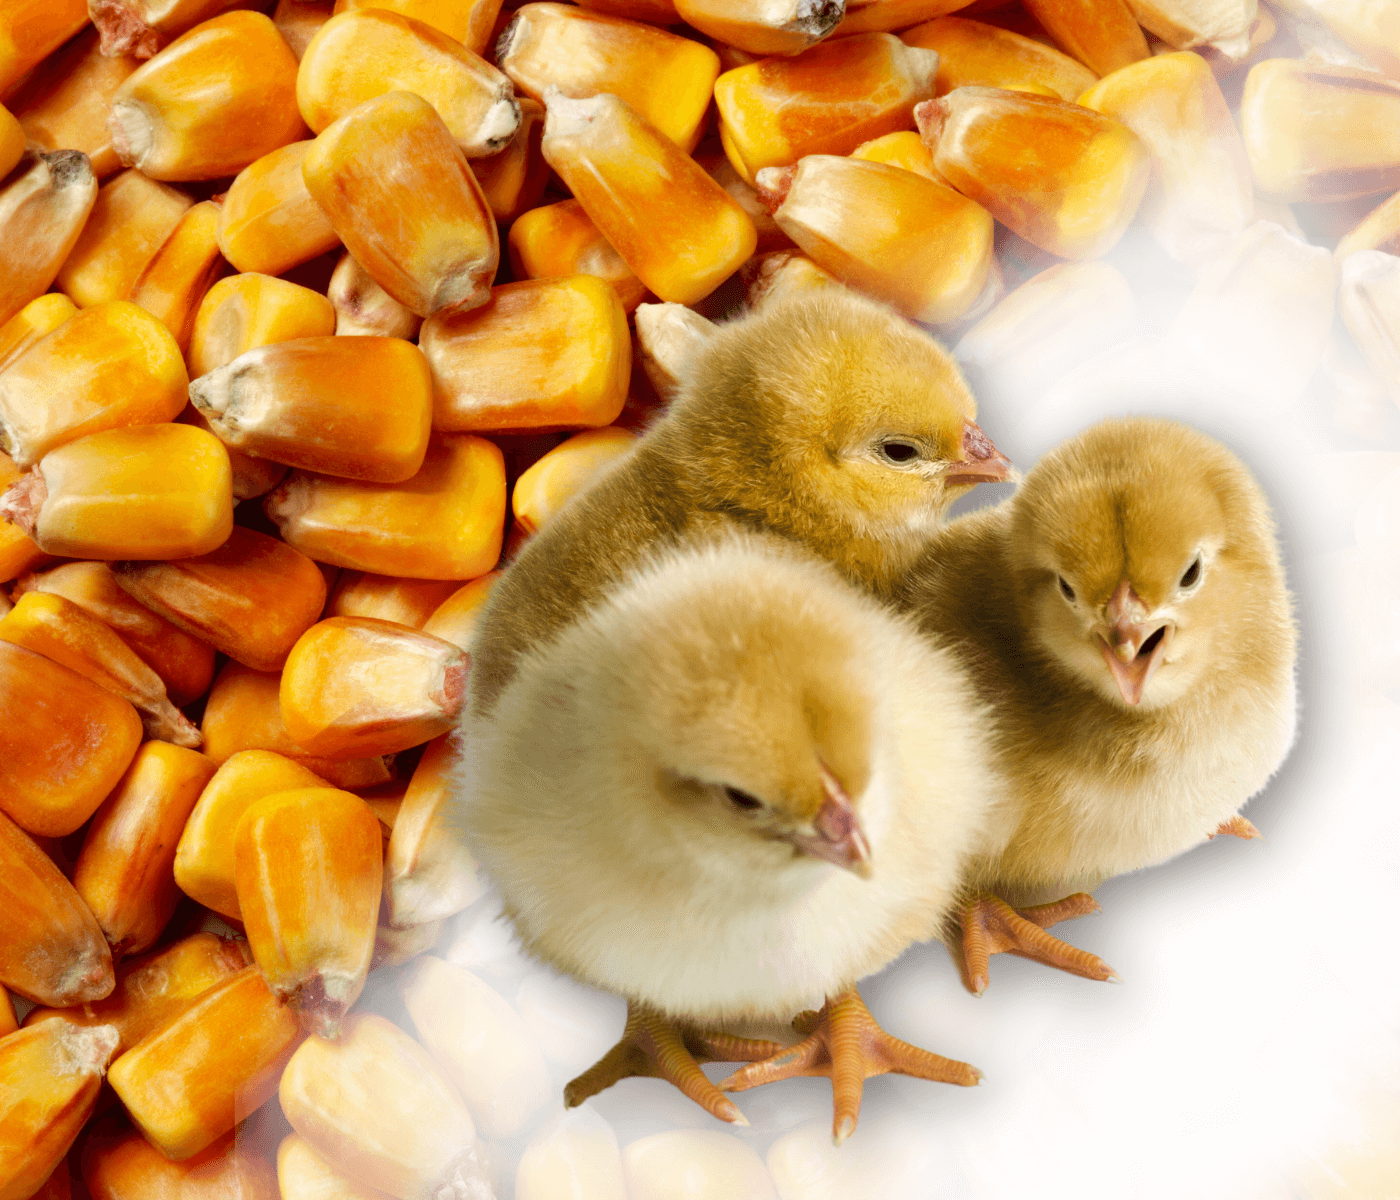 Alternativas de cereais para substituição parcial do milho na ração de aves